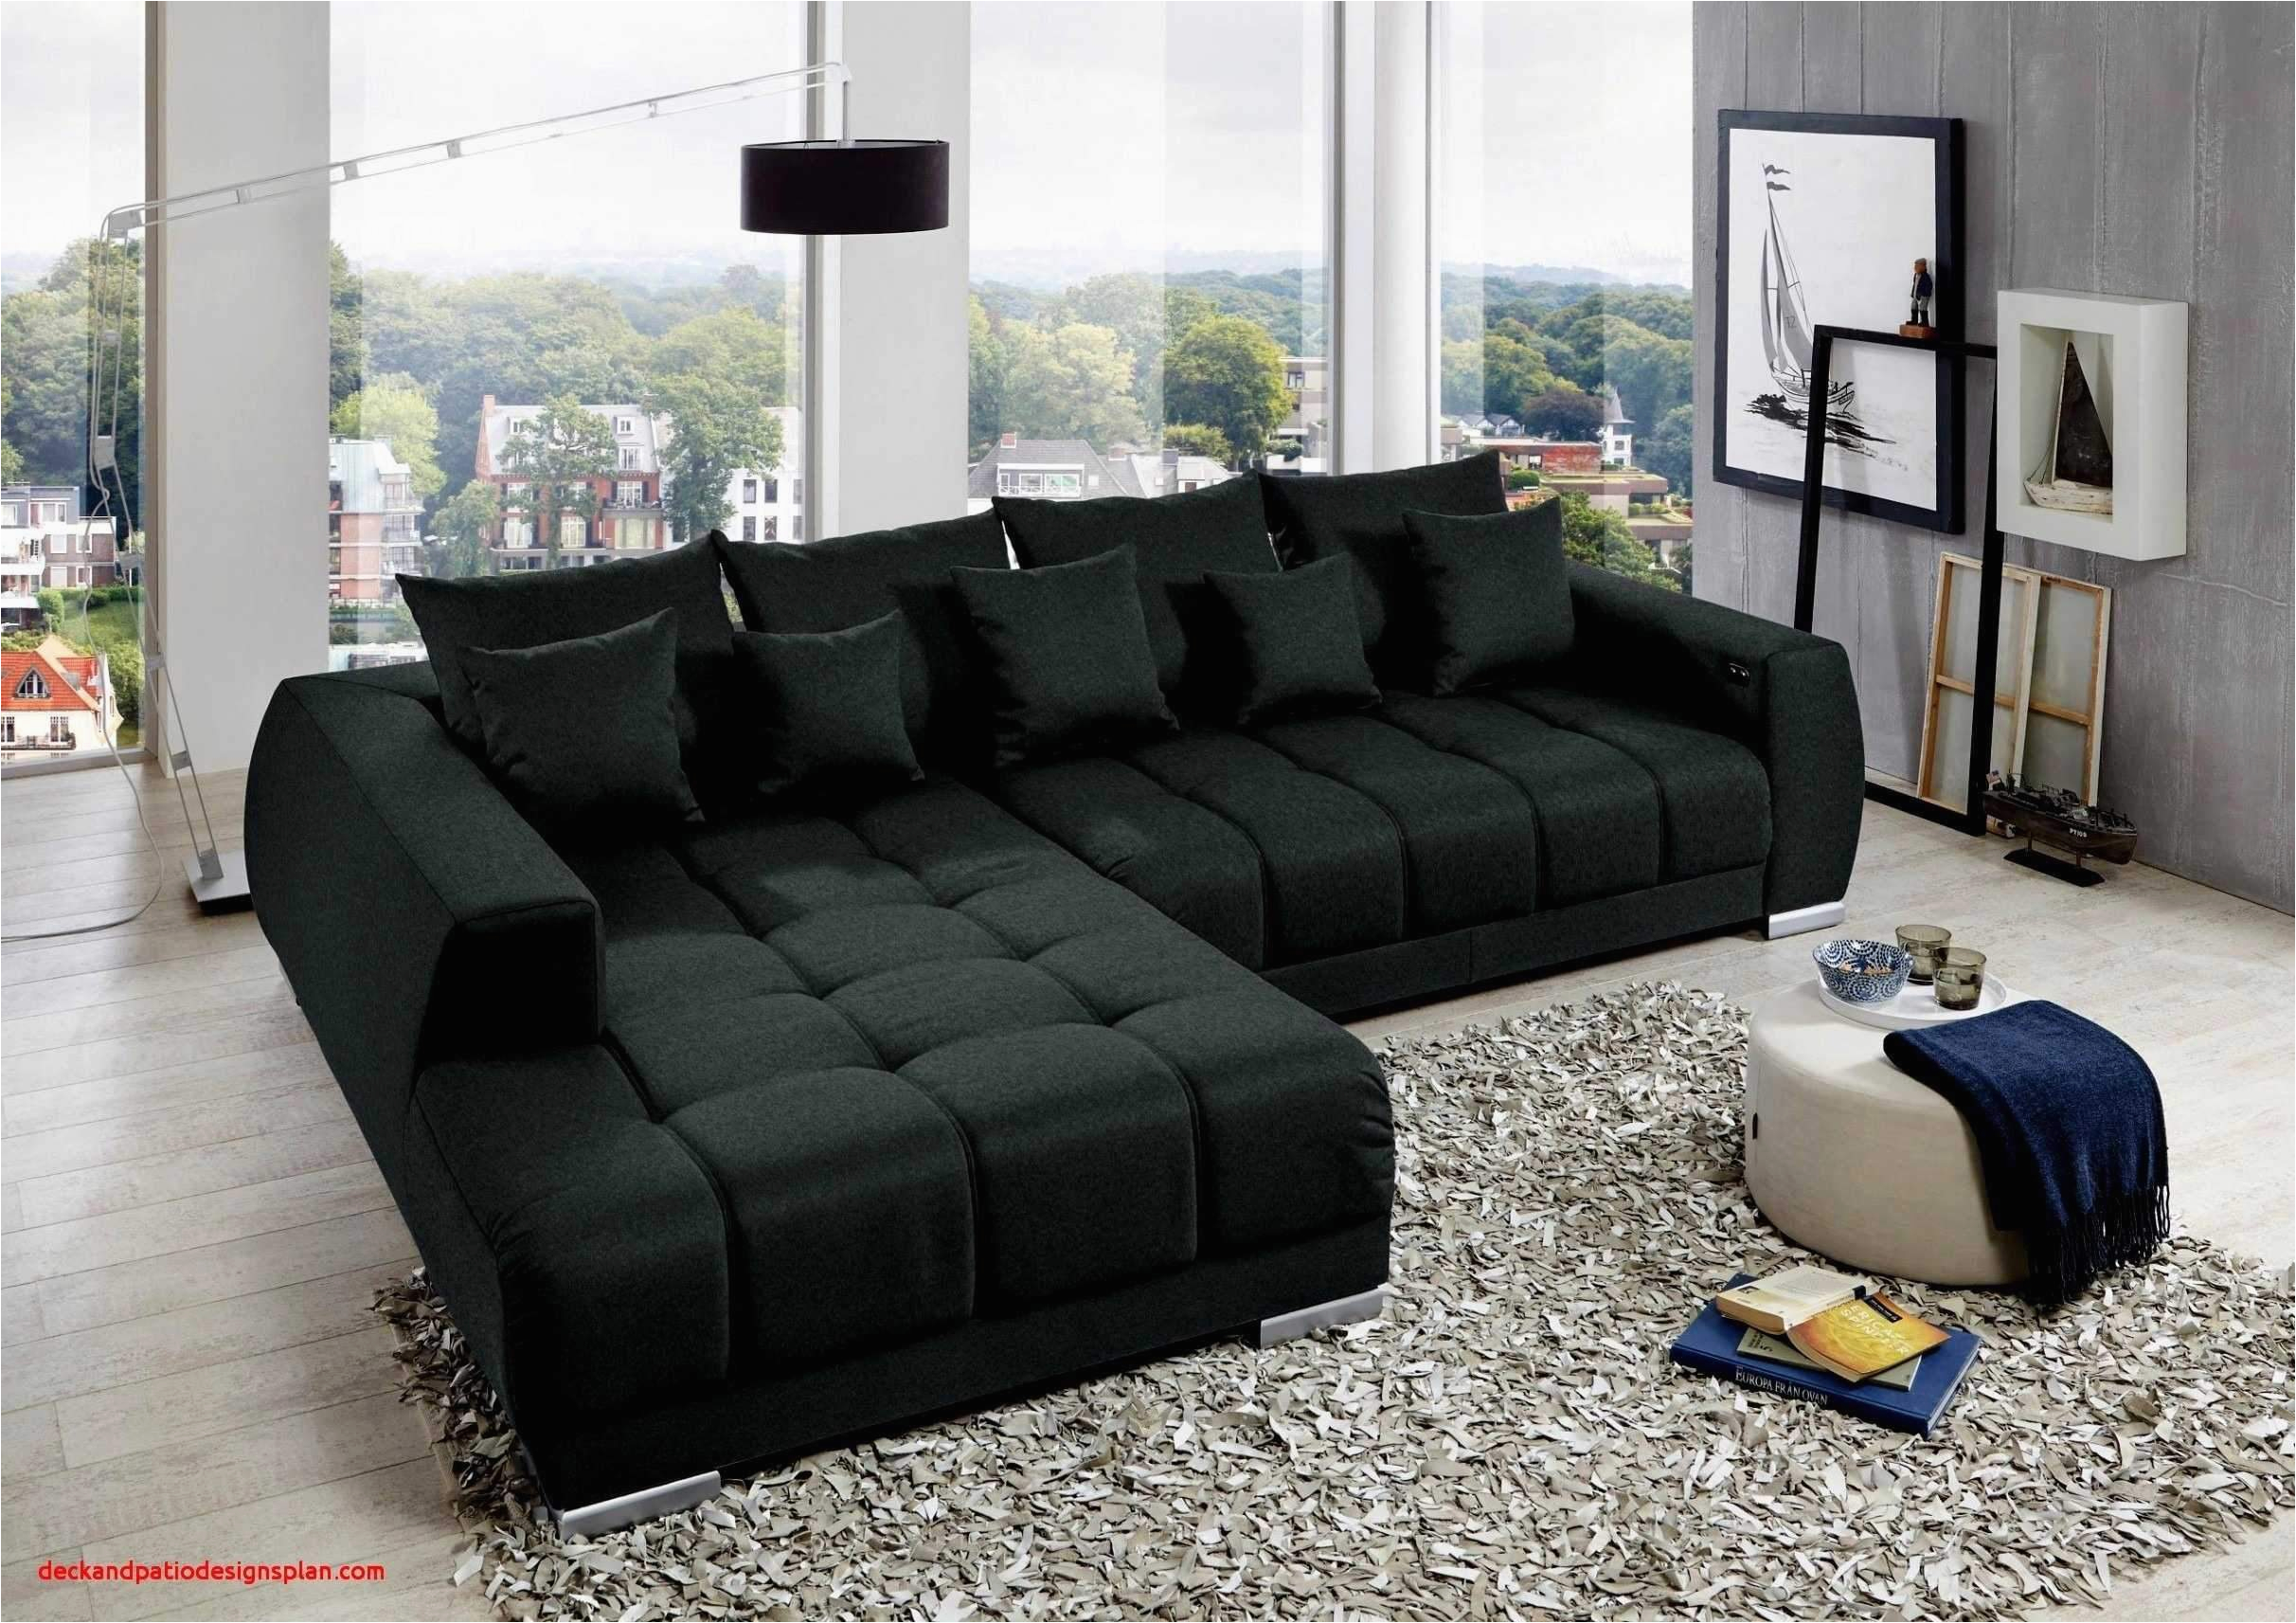 Sofa Mit Neuem Stoff Beziehen 33 Elegant Couch Wohnzimmer Elegant